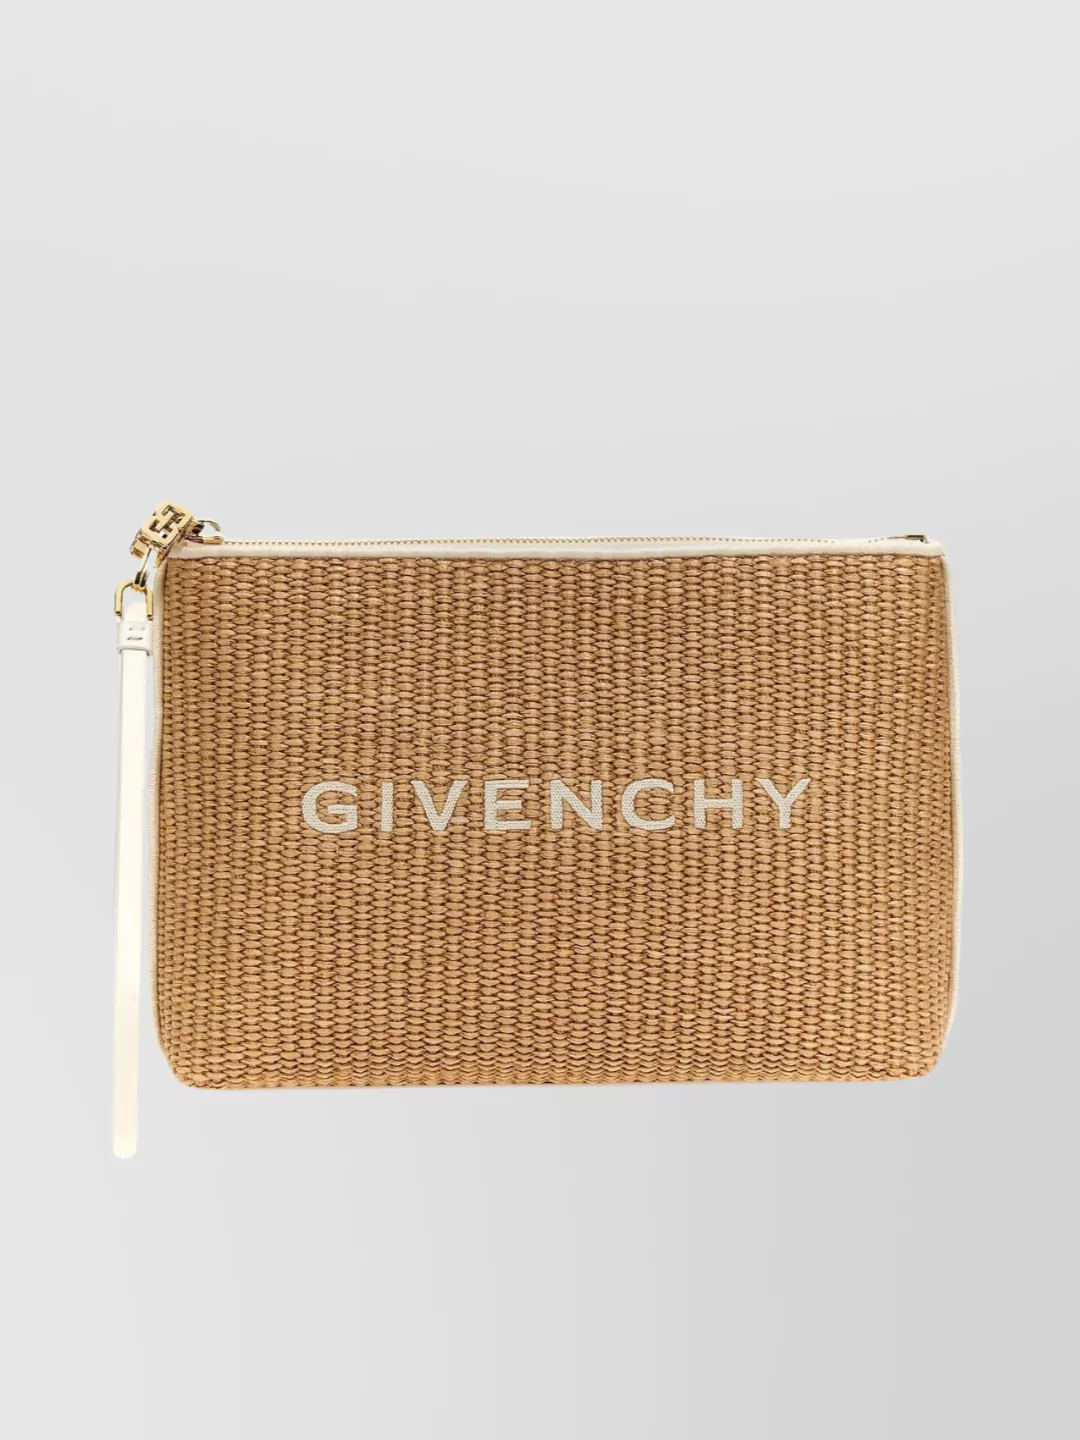 Givenchy Logo Raffia Clutch In Neutrals